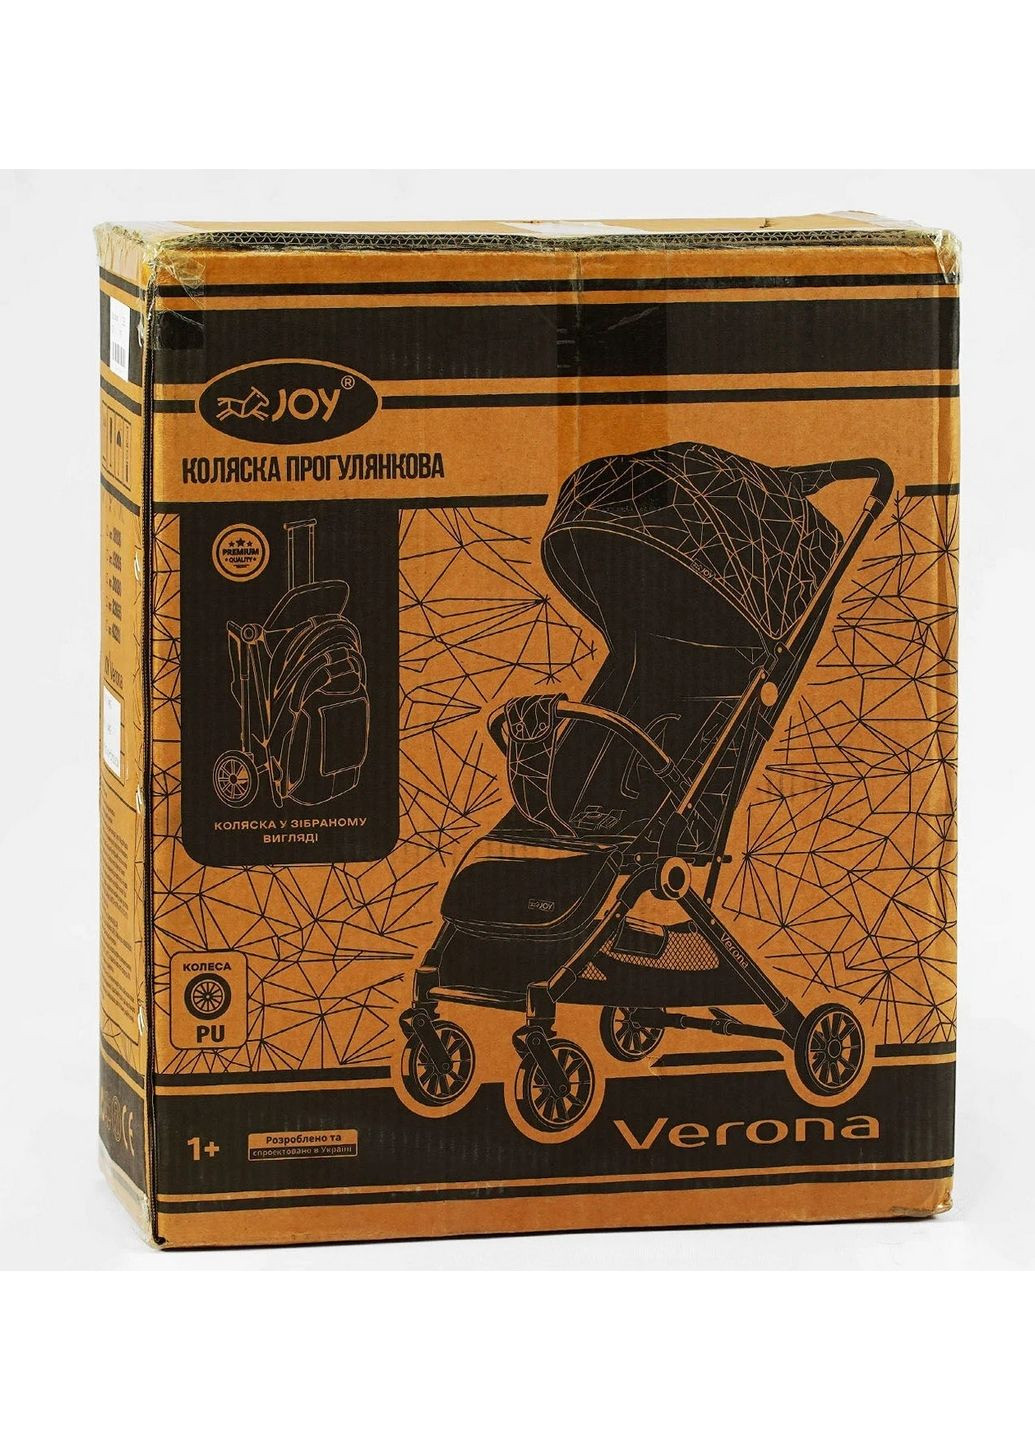 Коляска прогулянкова дитяча Verona телескопічна ручка Joy (288137739)